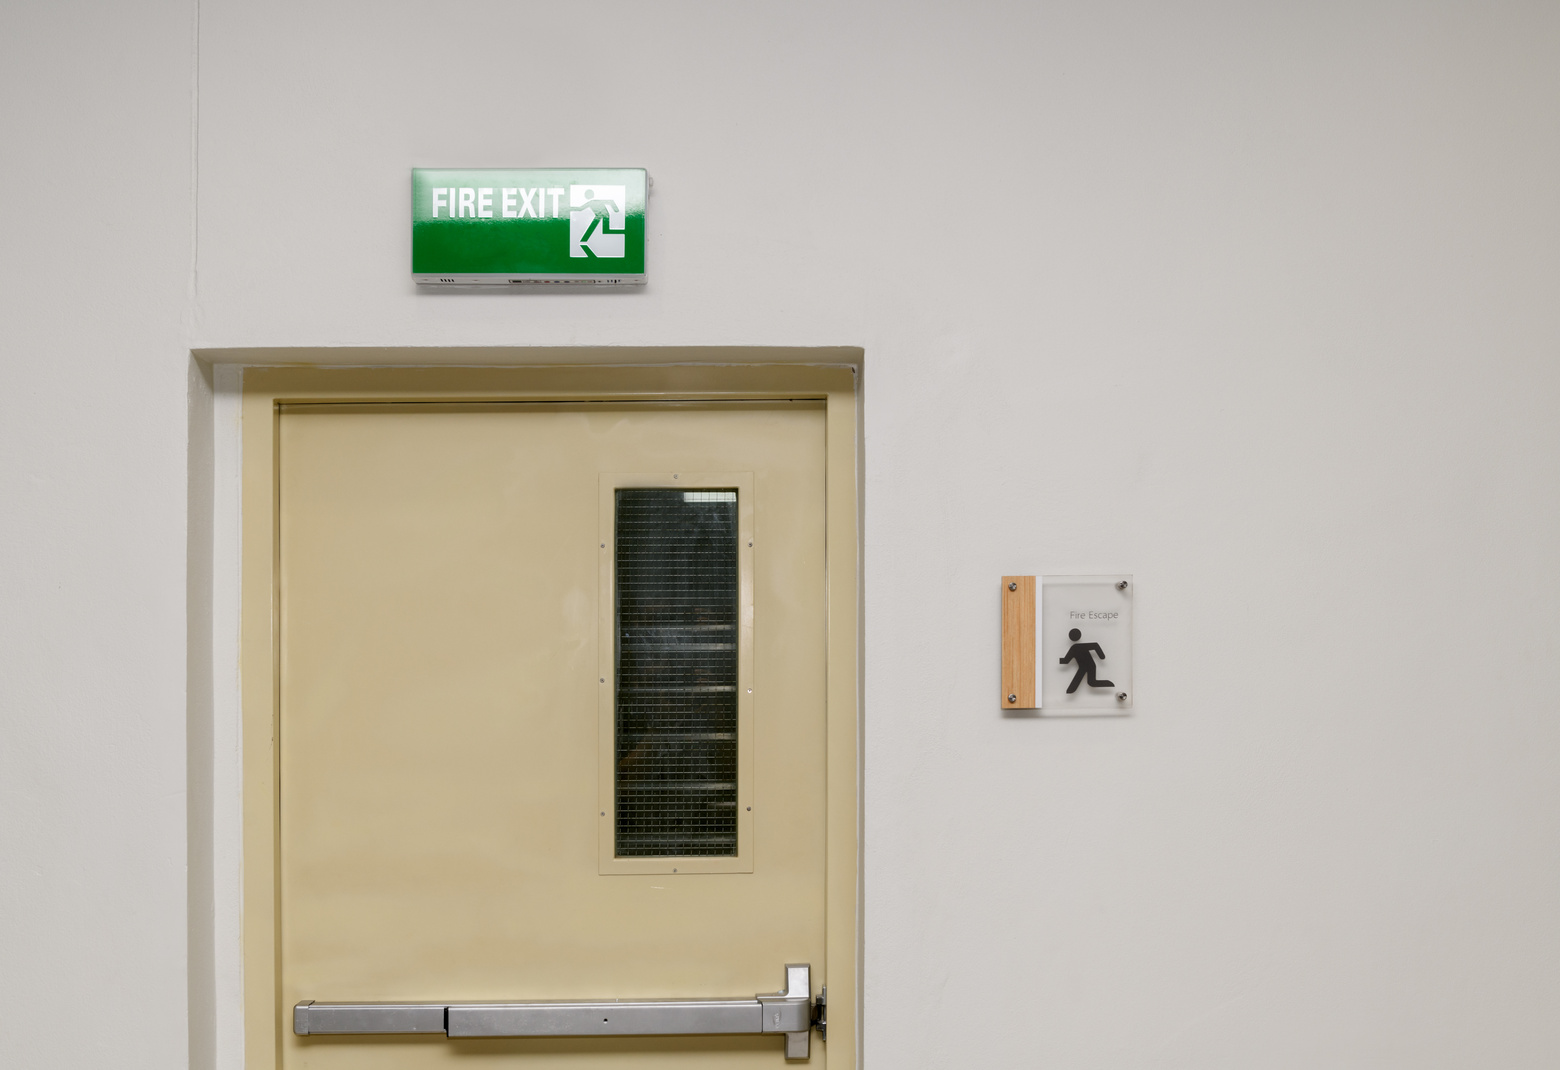 Fire exit steel door for evacuation in case of fire